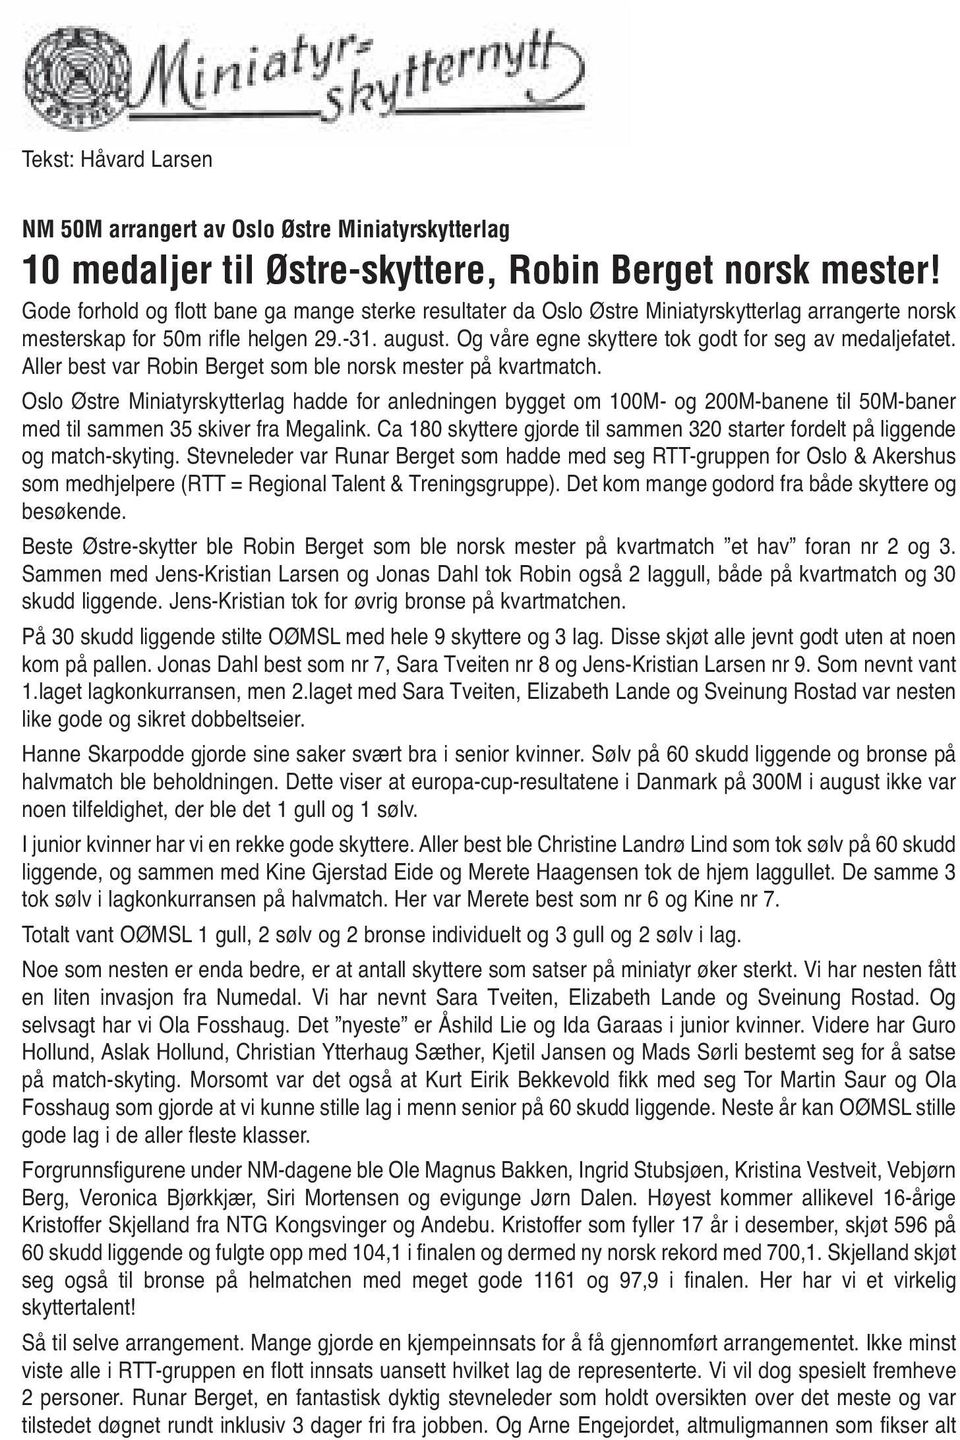 Og våre egne skyttere tok godt for seg av medaljefatet. Aller best var Robin Berget som ble norsk mester på kvartmatch.